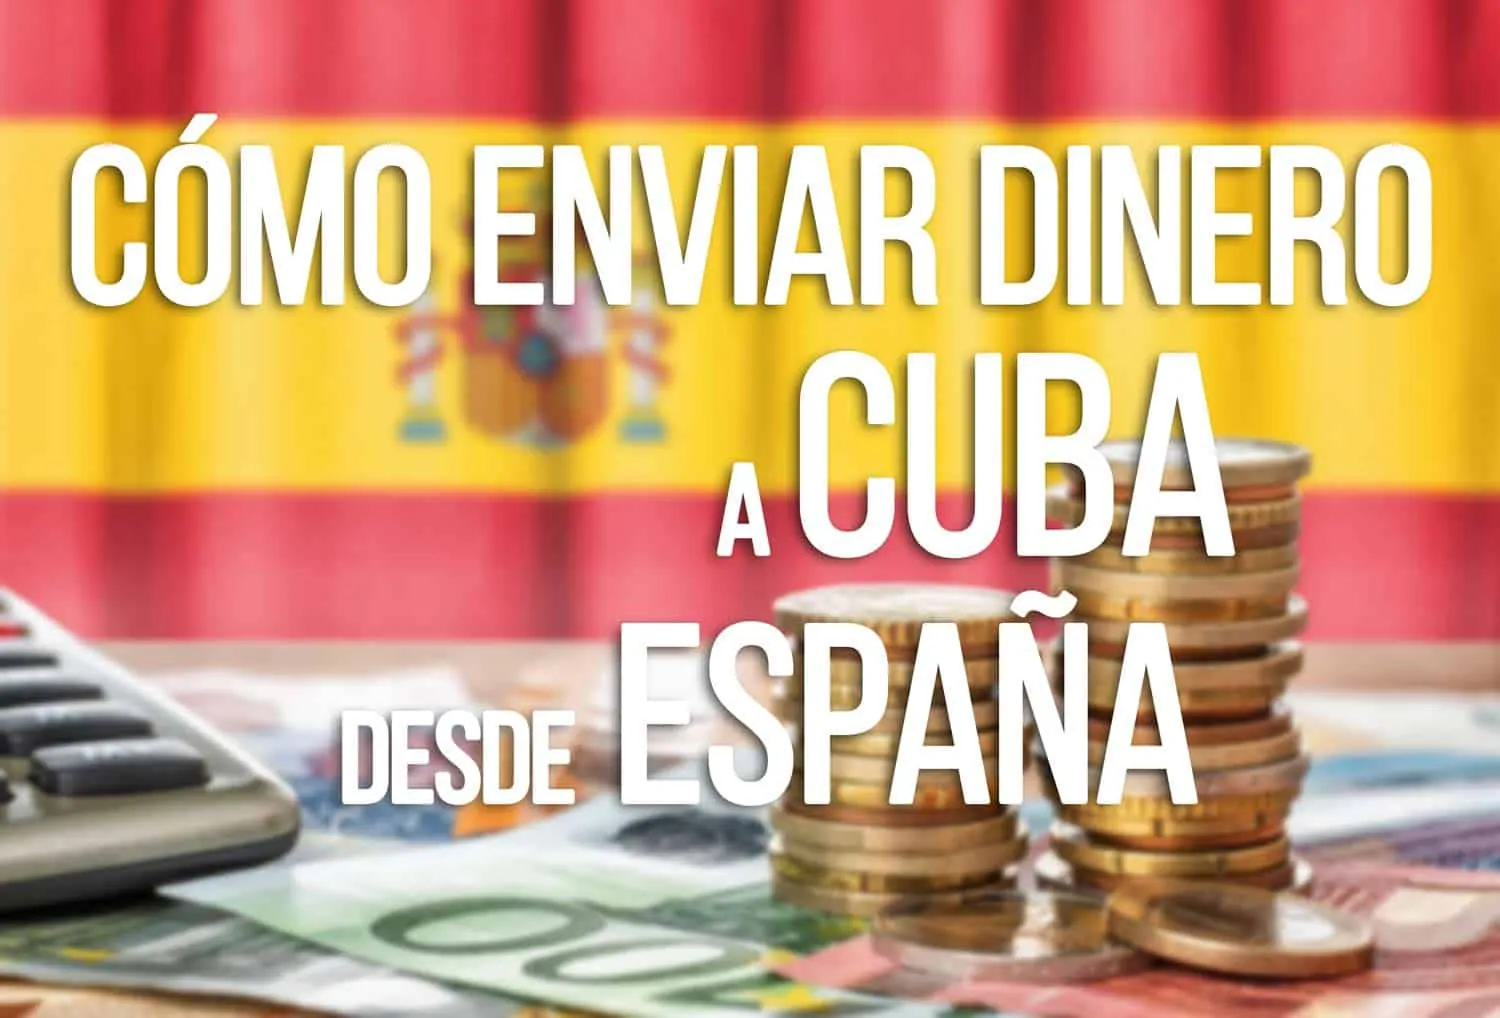 Cómo Enviar Dinero A Cuba Desde España Mejores Formas De Hacerlo 1411